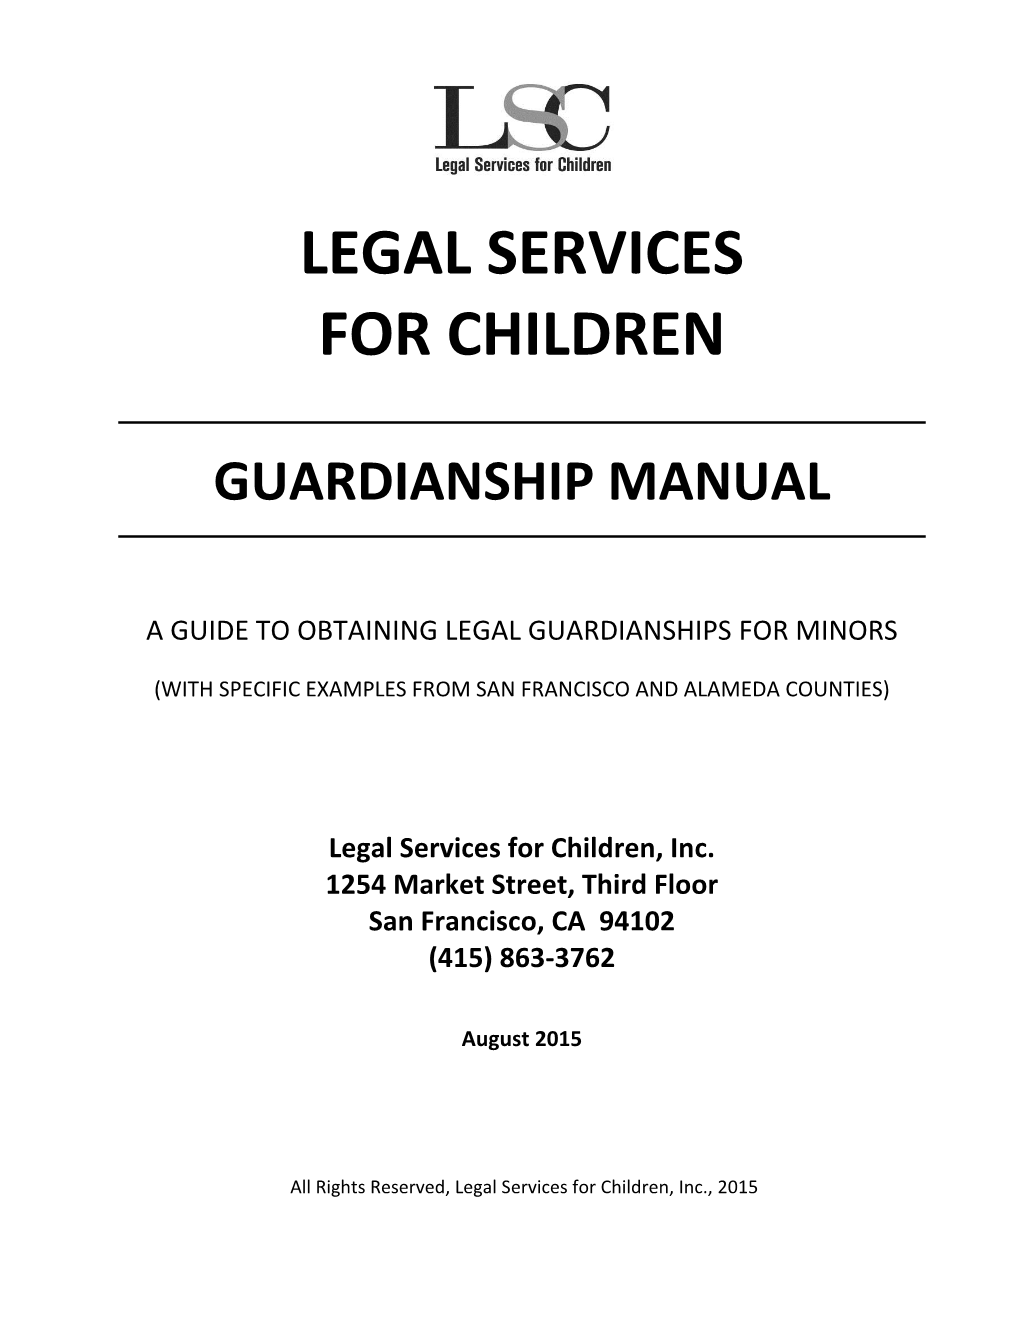 Guardianship Manual